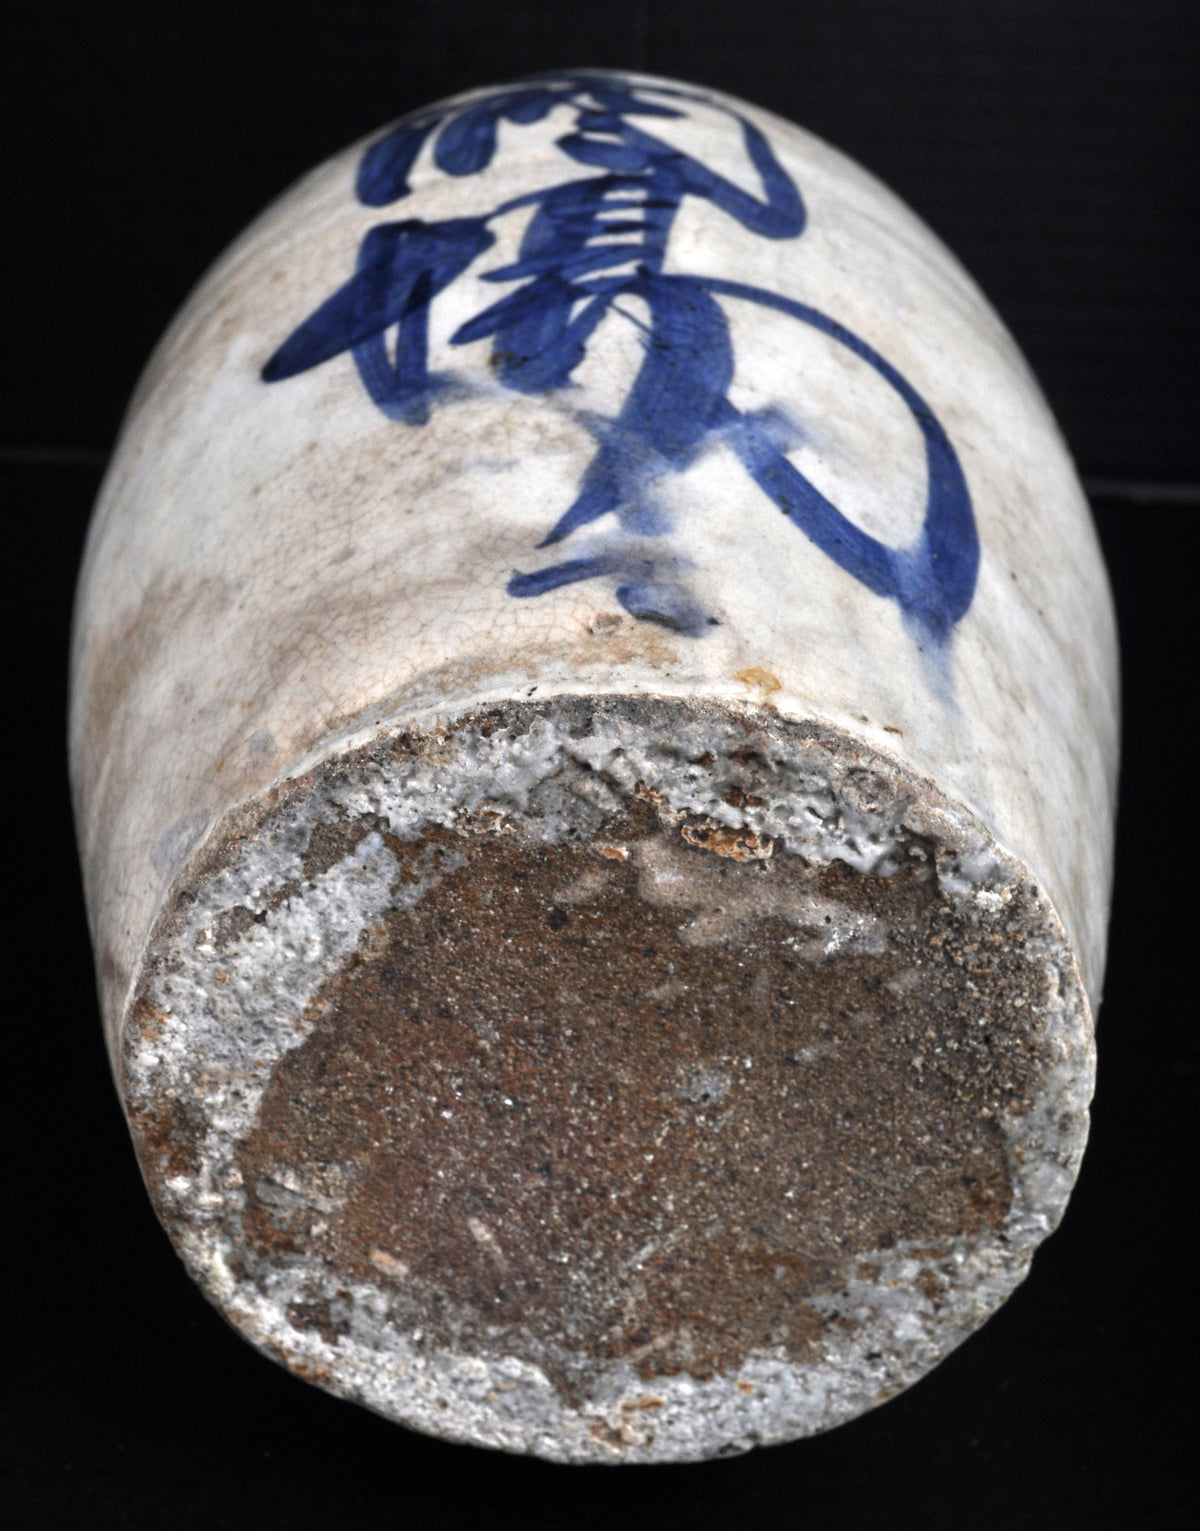 Antique Japanese Meiji Period Blue & White Stoneware Tokurri (Sake Bottle), Circa 1880